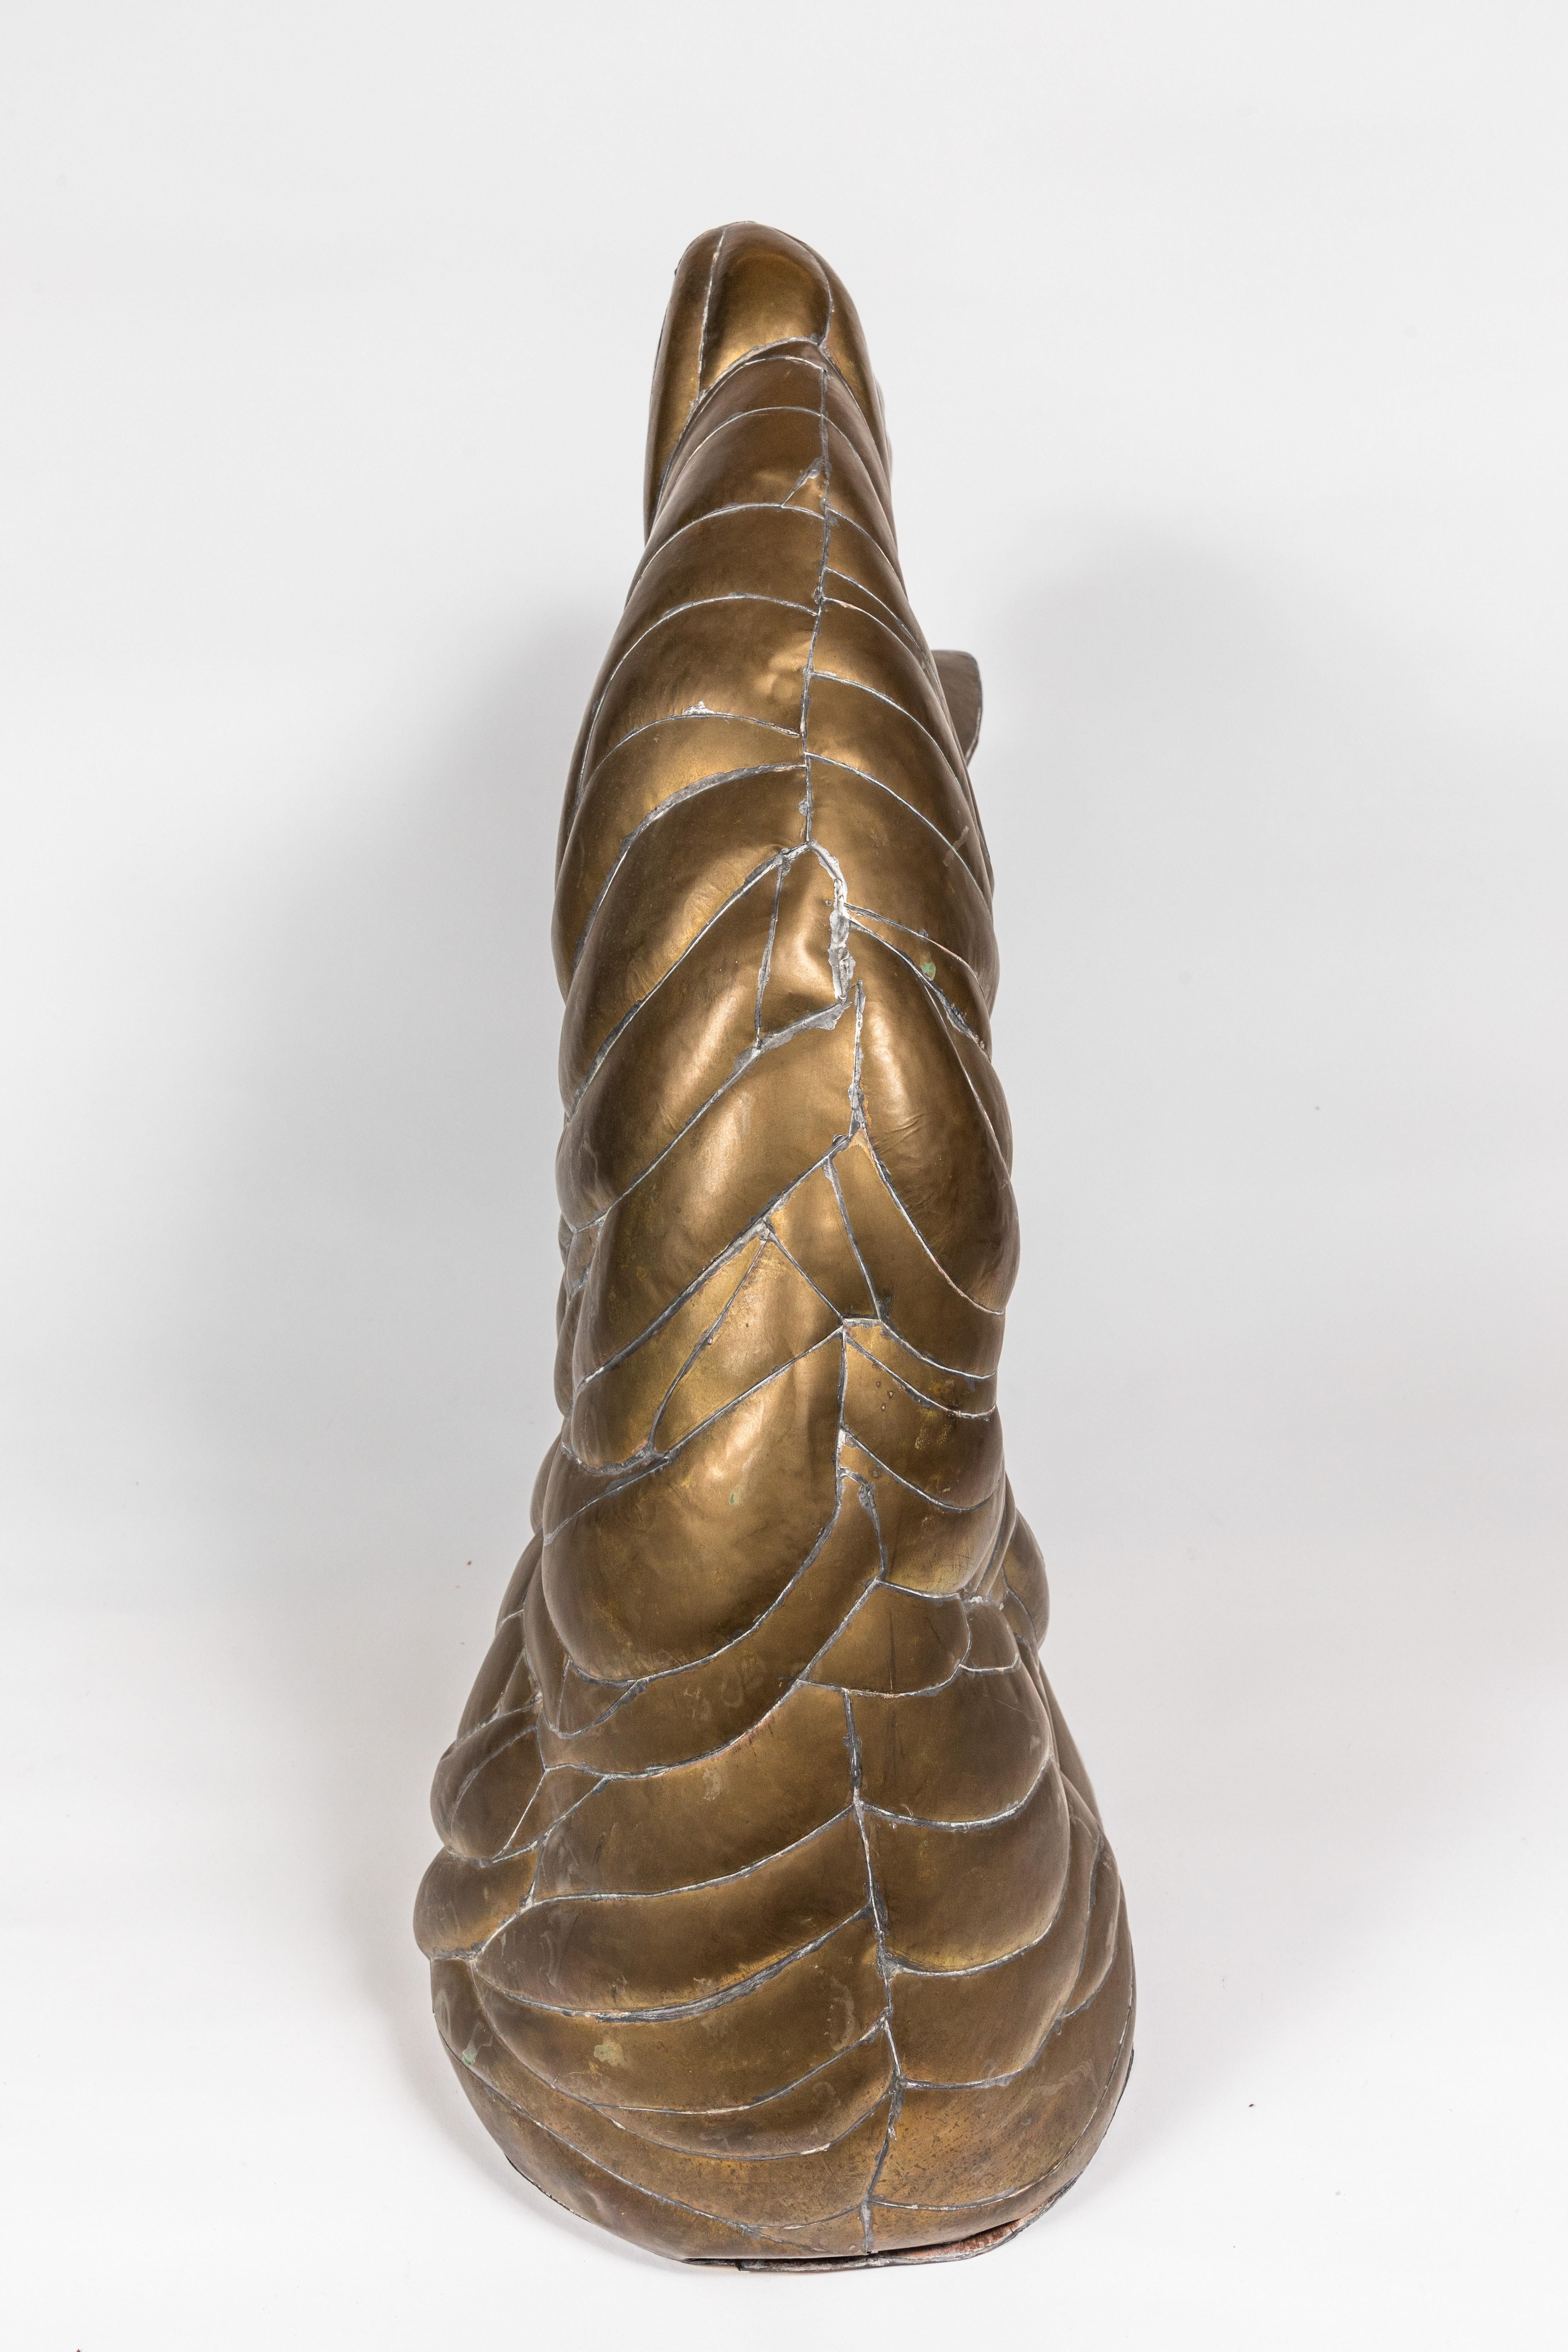 20th Century Horse Head Sculpture in Pieced Brass